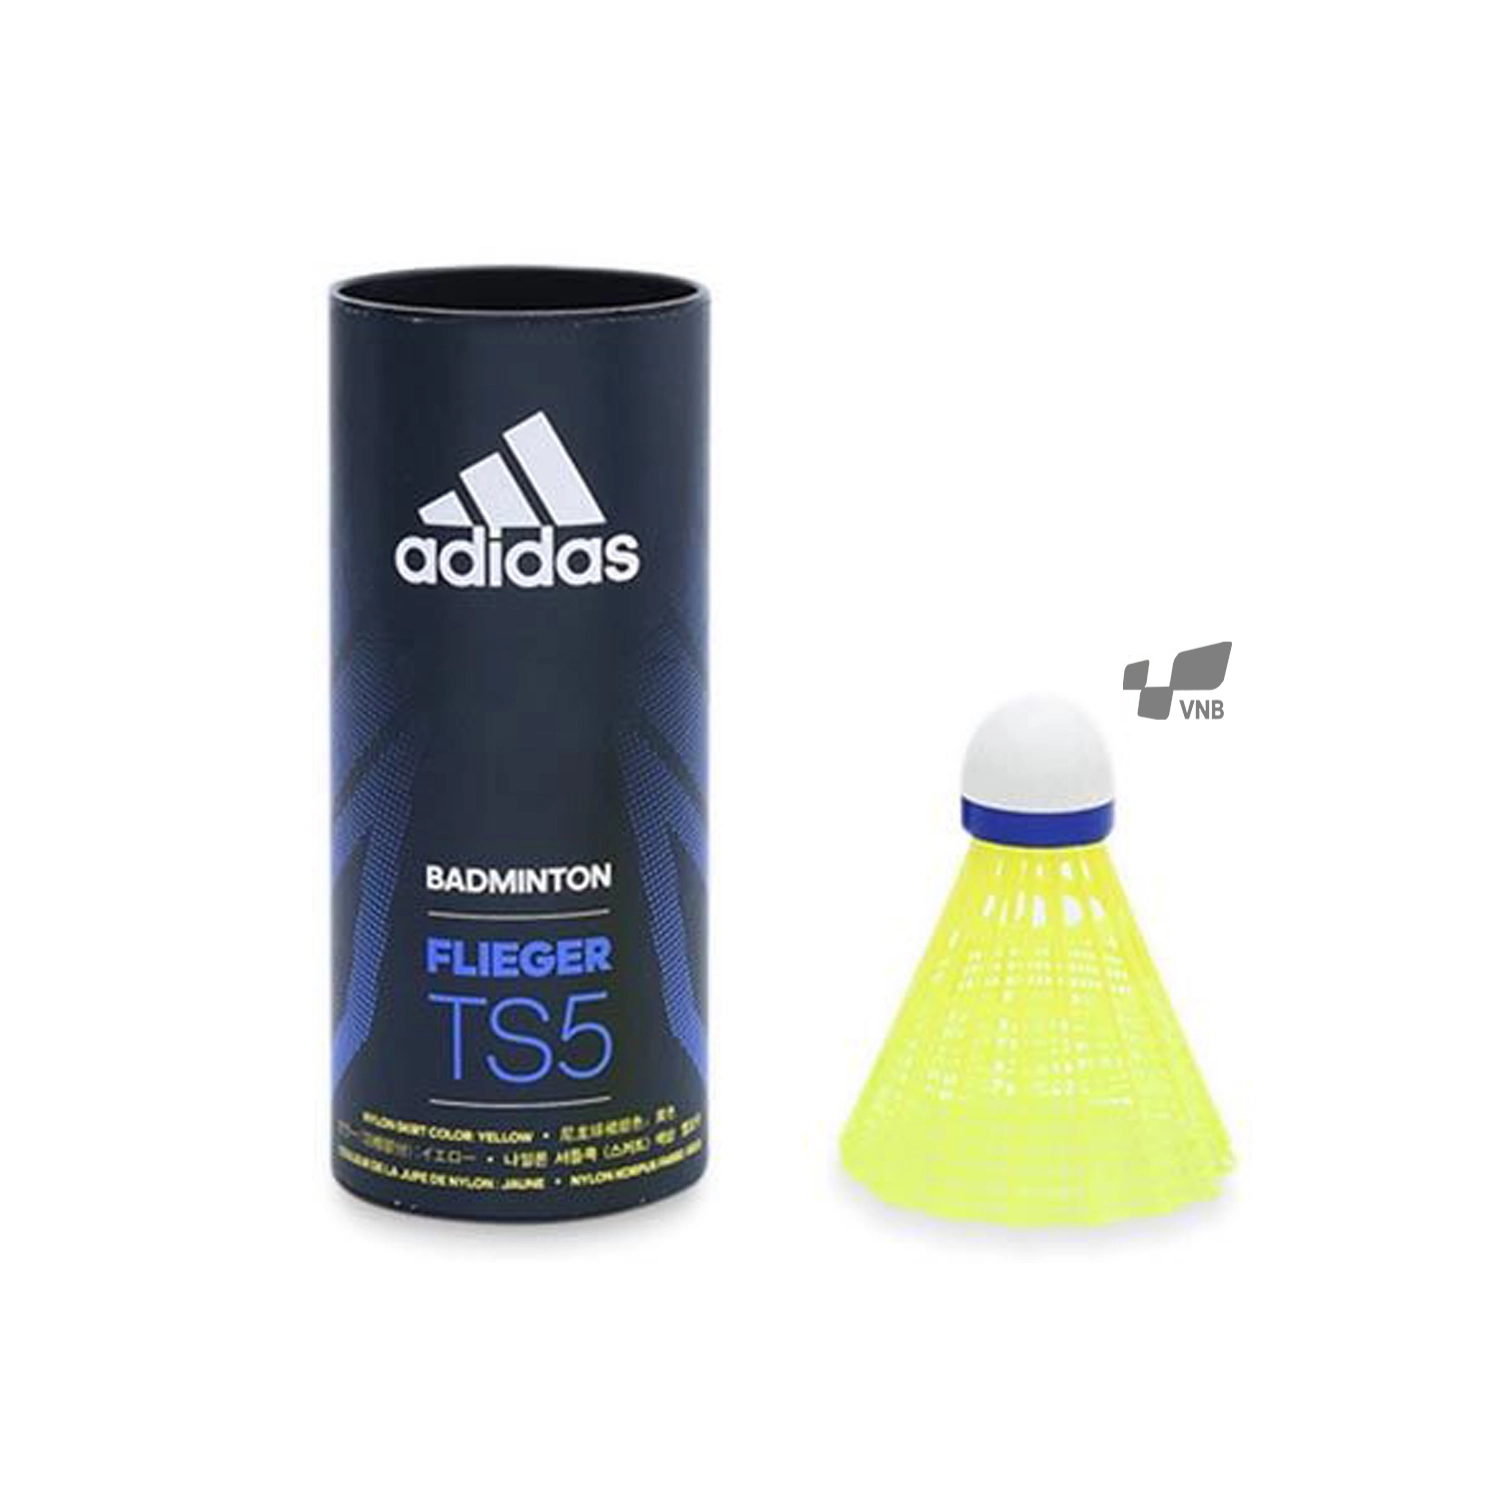 Ống cầu lông nhựa xịn Adidas Flieger TS5 Vàng - 3 trái